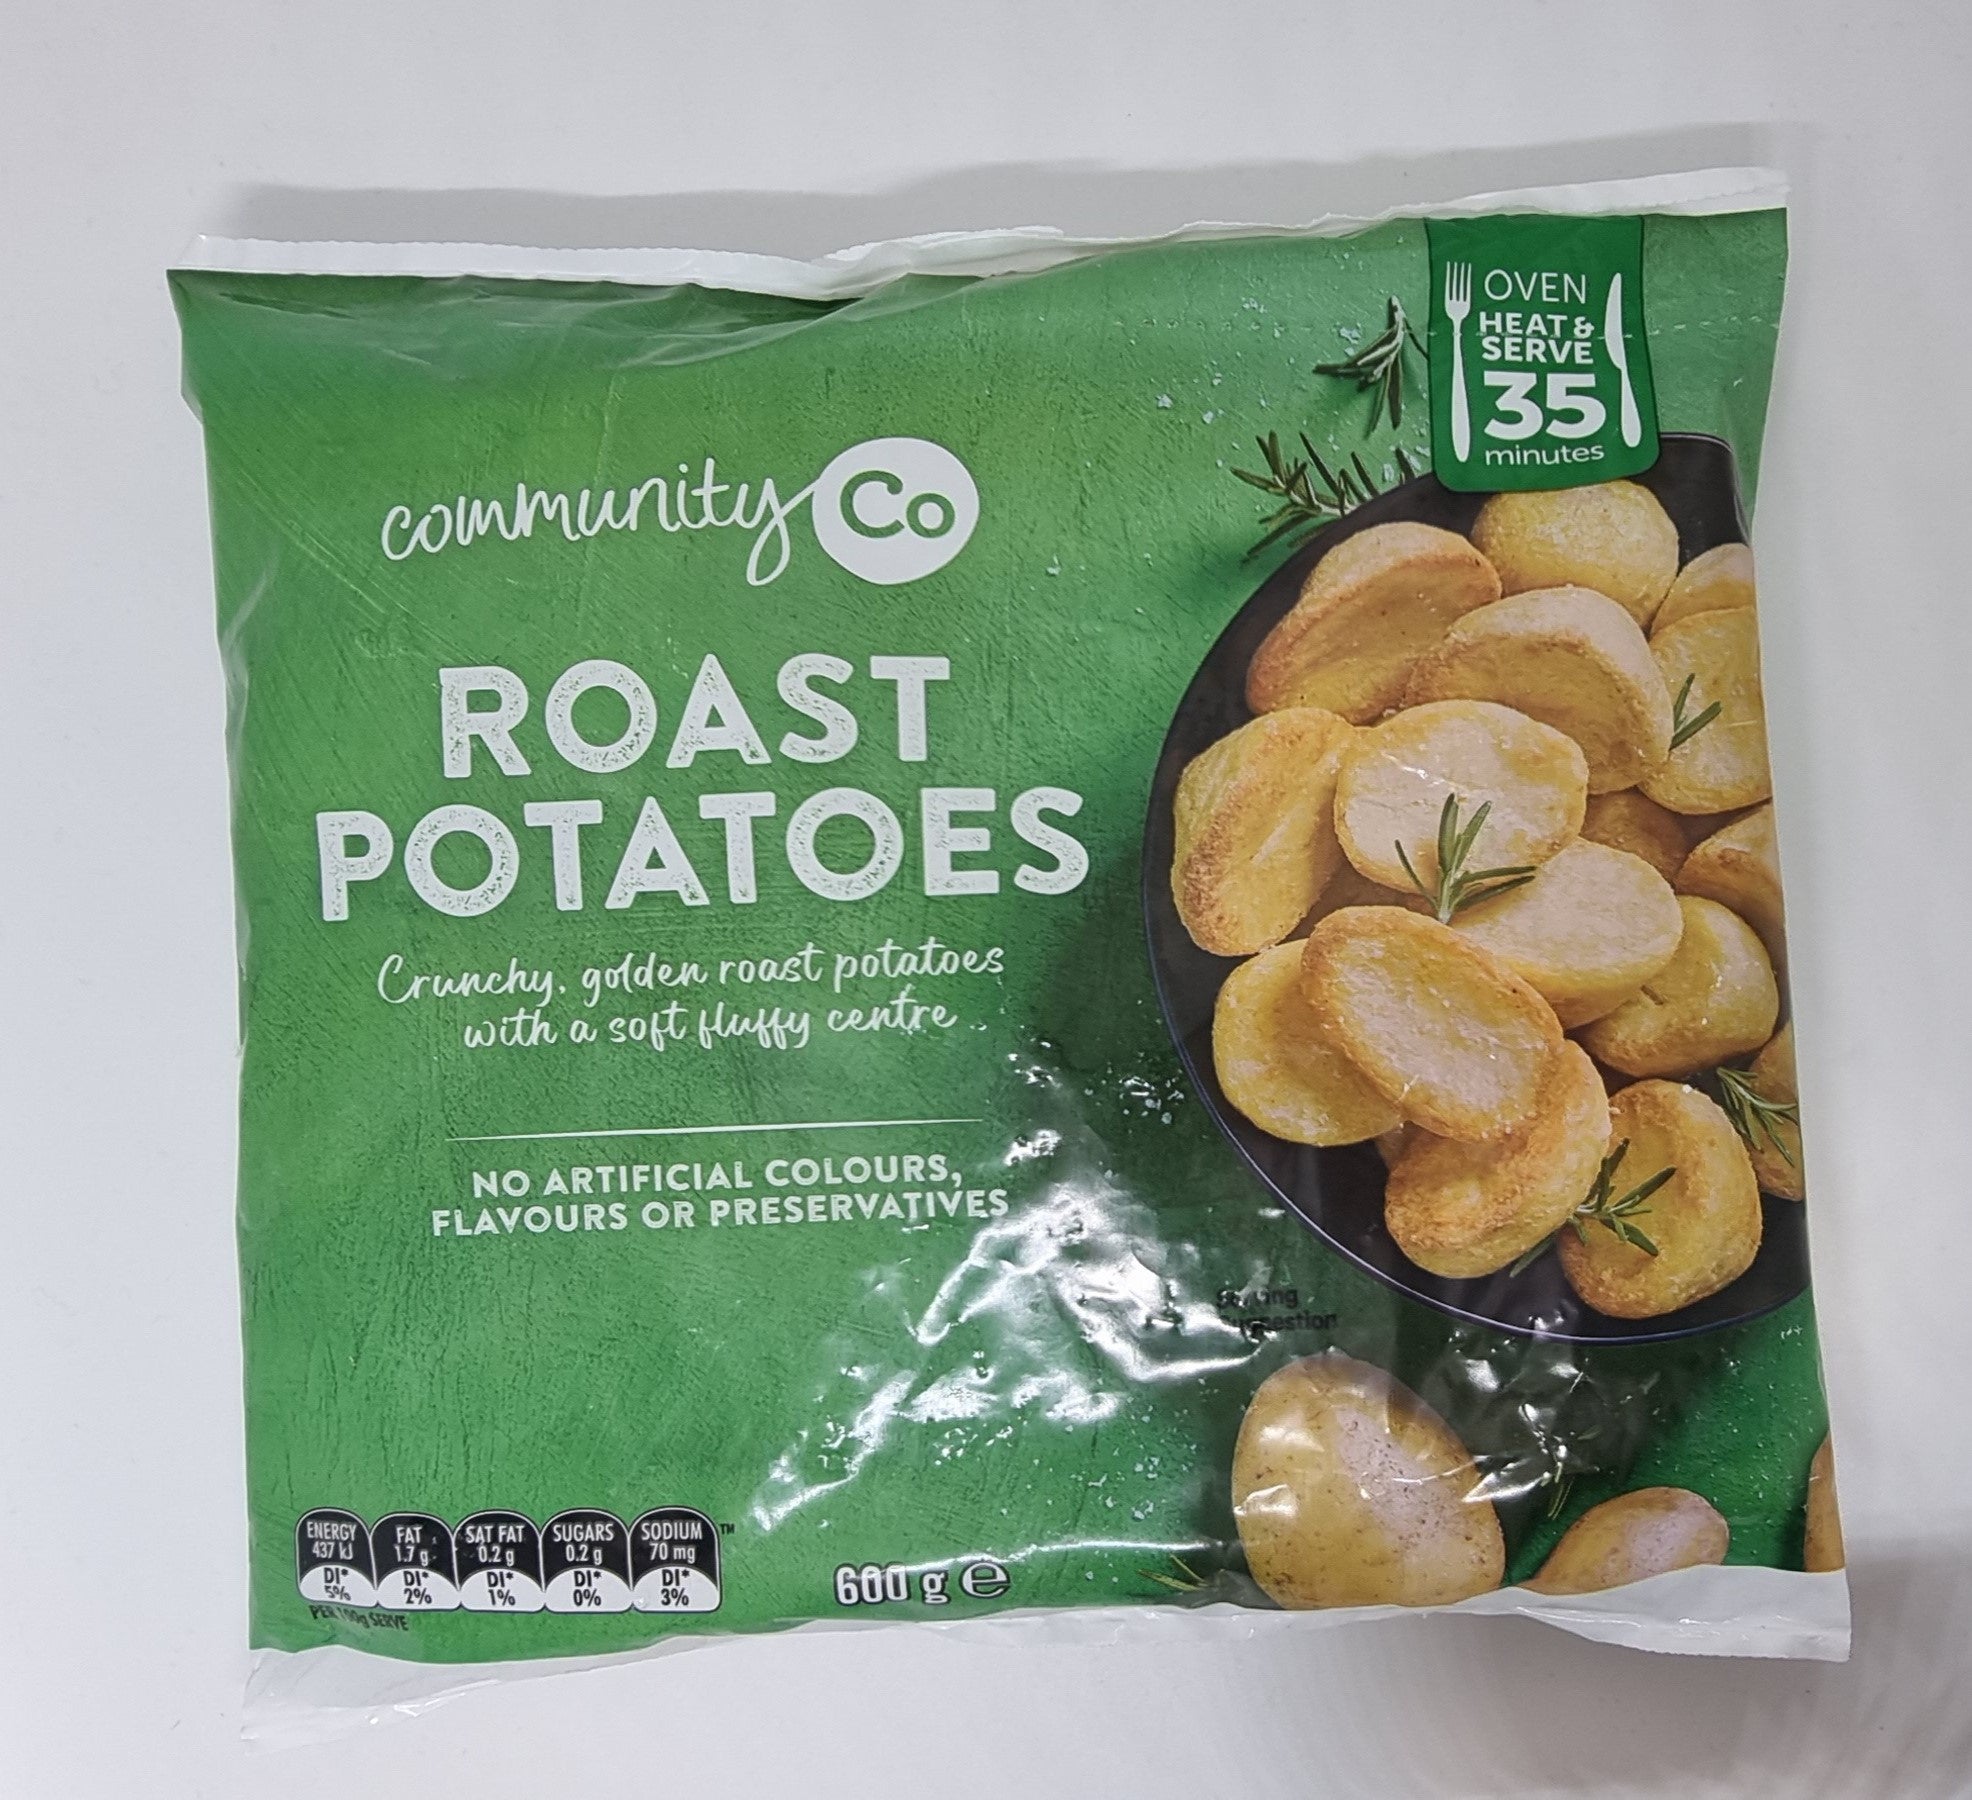 Community Co Roast Potatoes 600g